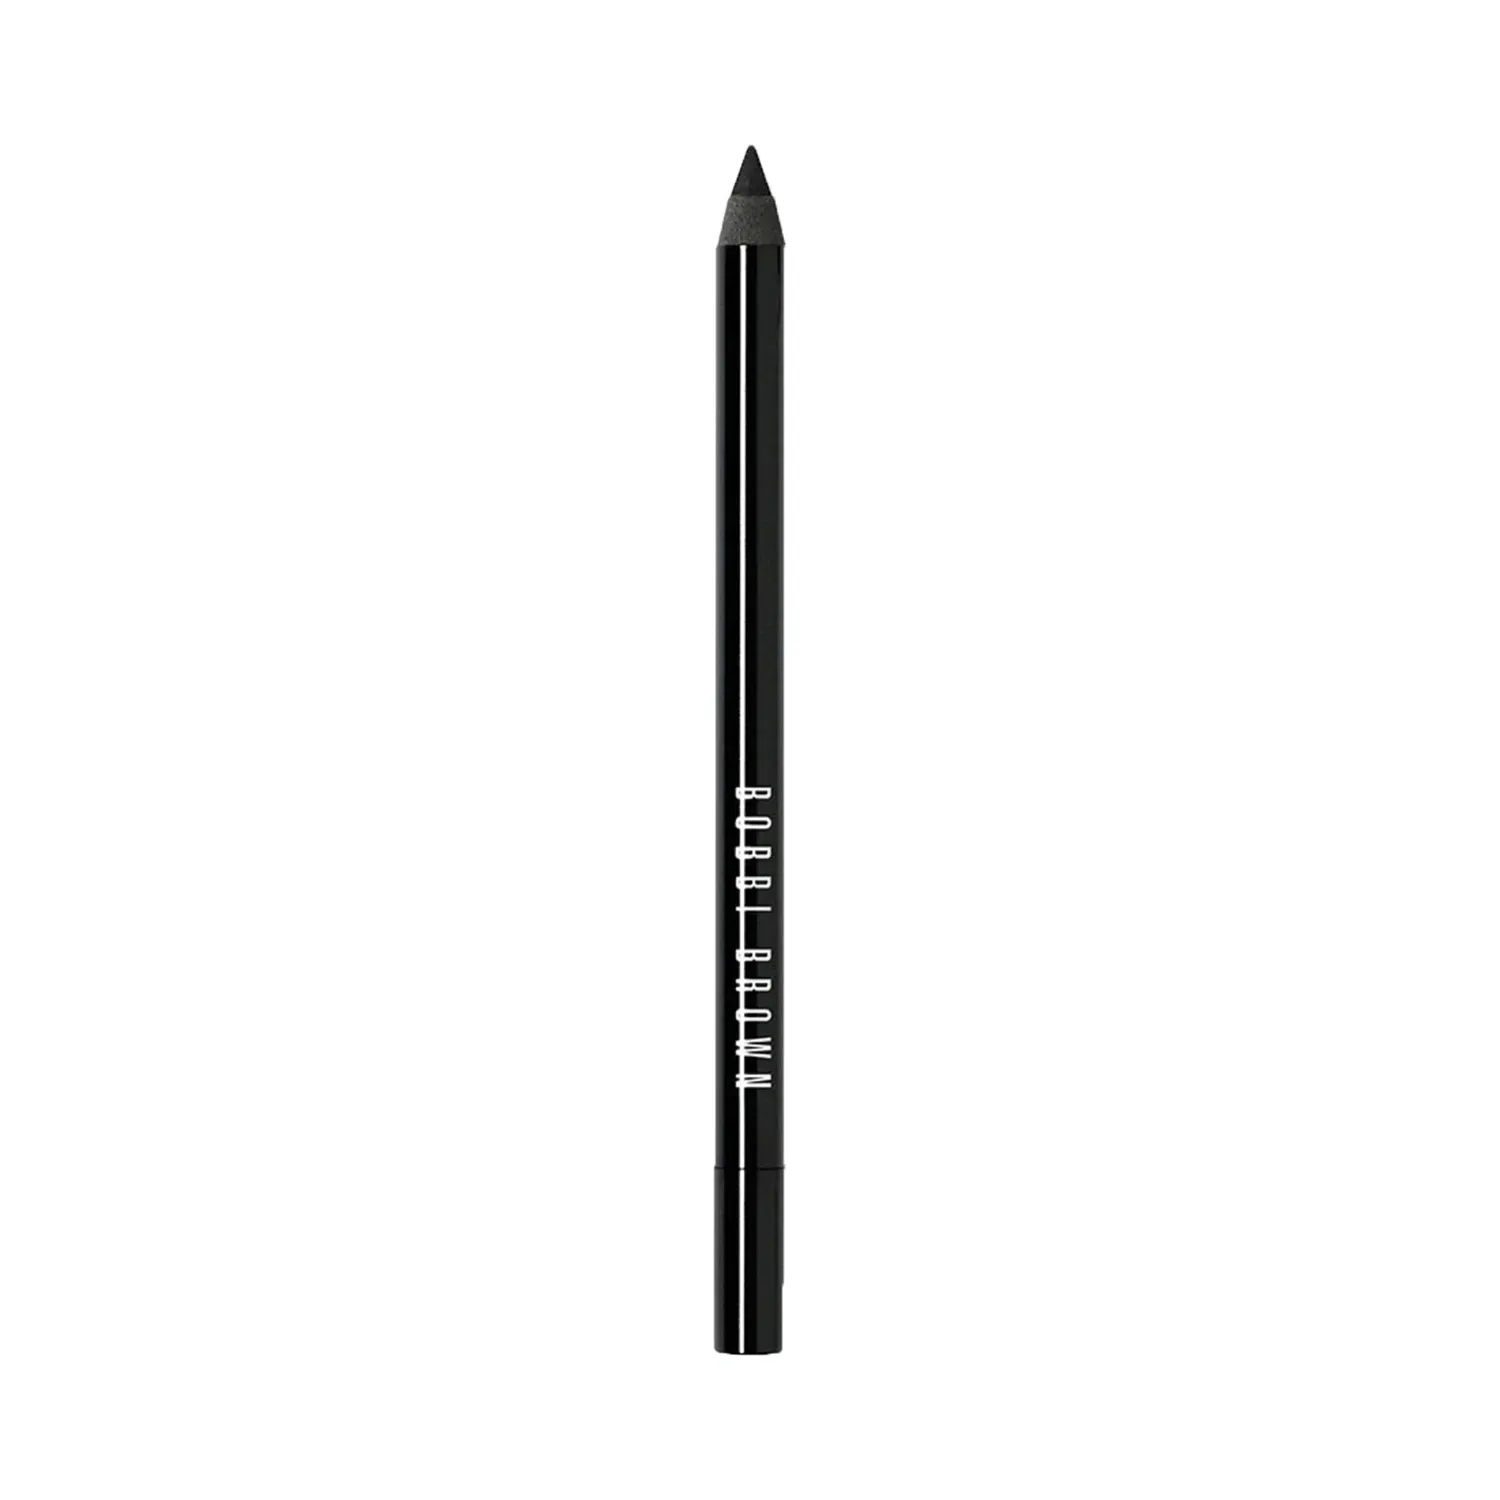 Bobbi Brown | Bobbi Brown Long Wear Eye Pencil - Jet Black (1.3g)